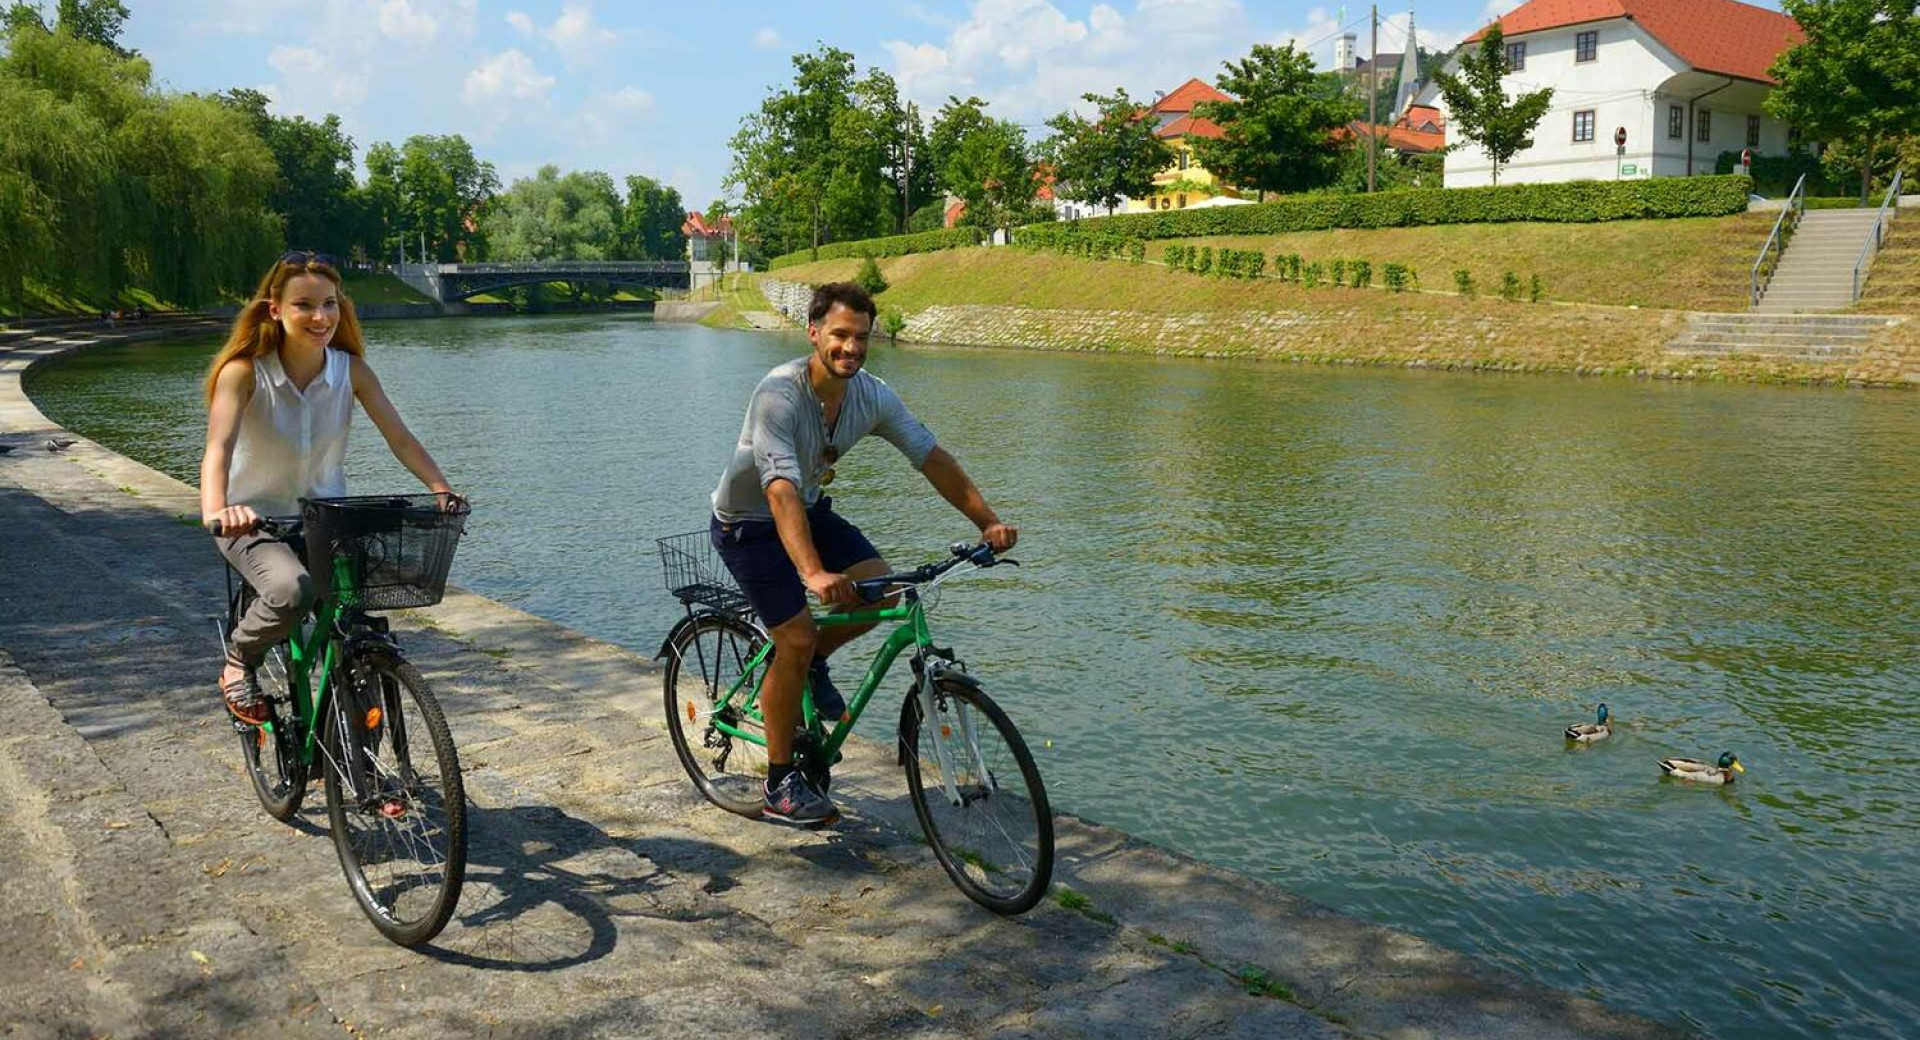 Ženska in moški kolesarita po nabrežju Ljubljanice, v reki rački, v ozadju zelenje in hiše